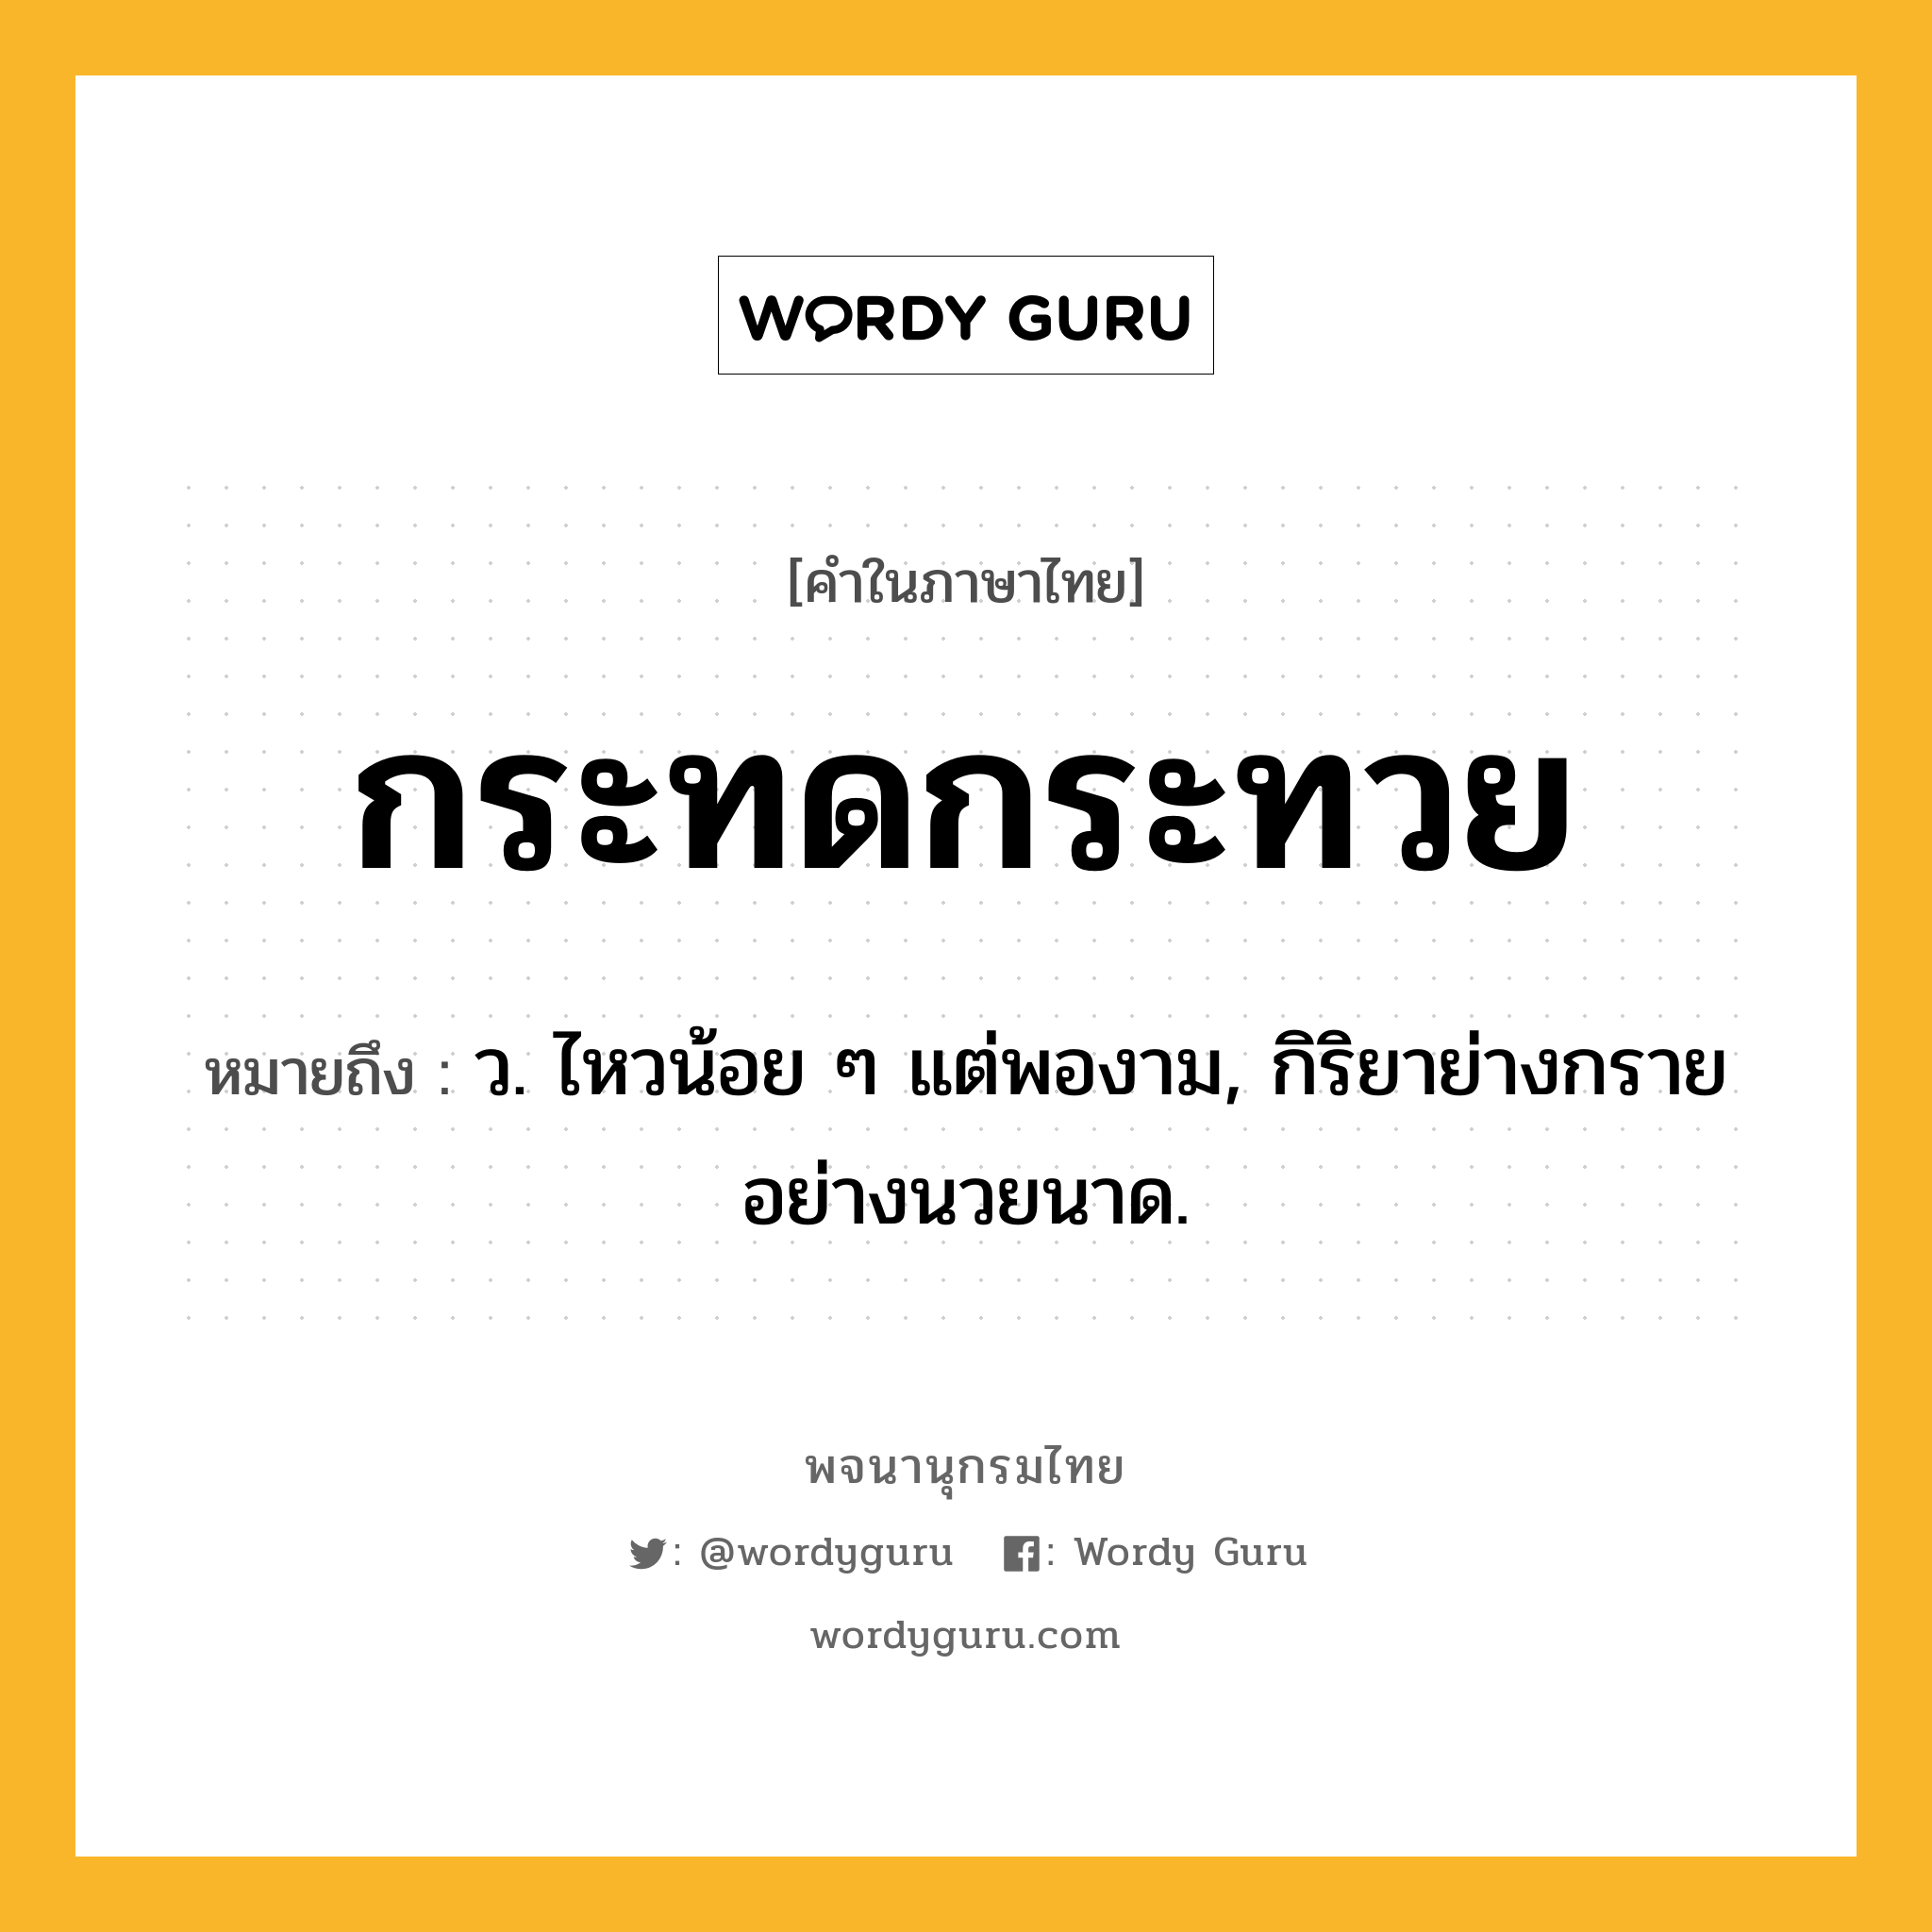 กระทดกระทวย ความหมาย หมายถึงอะไร?, คำในภาษาไทย กระทดกระทวย หมายถึง ว. ไหวน้อย ๆ แต่พองาม, กิริยาย่างกรายอย่างนวยนาด.